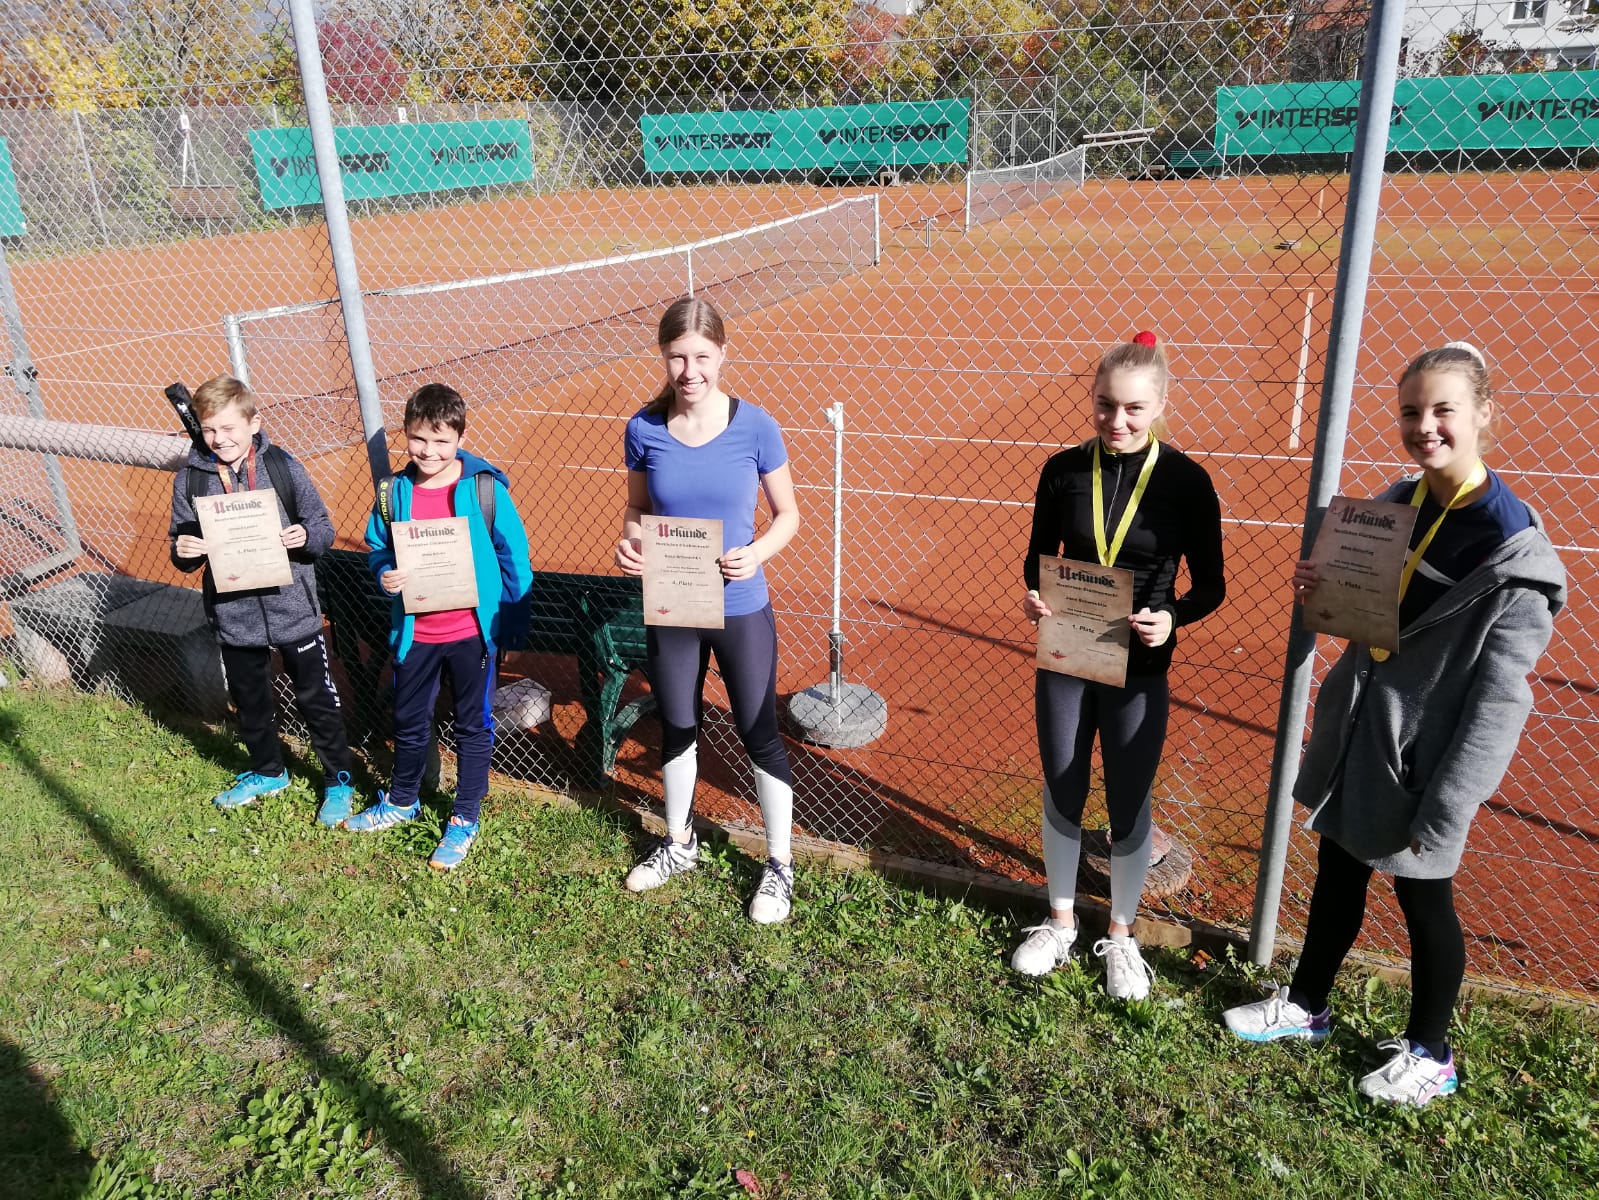 Die Siegerinnen und Sieger der Tennisqueen/Tennisking-Challenge 2020